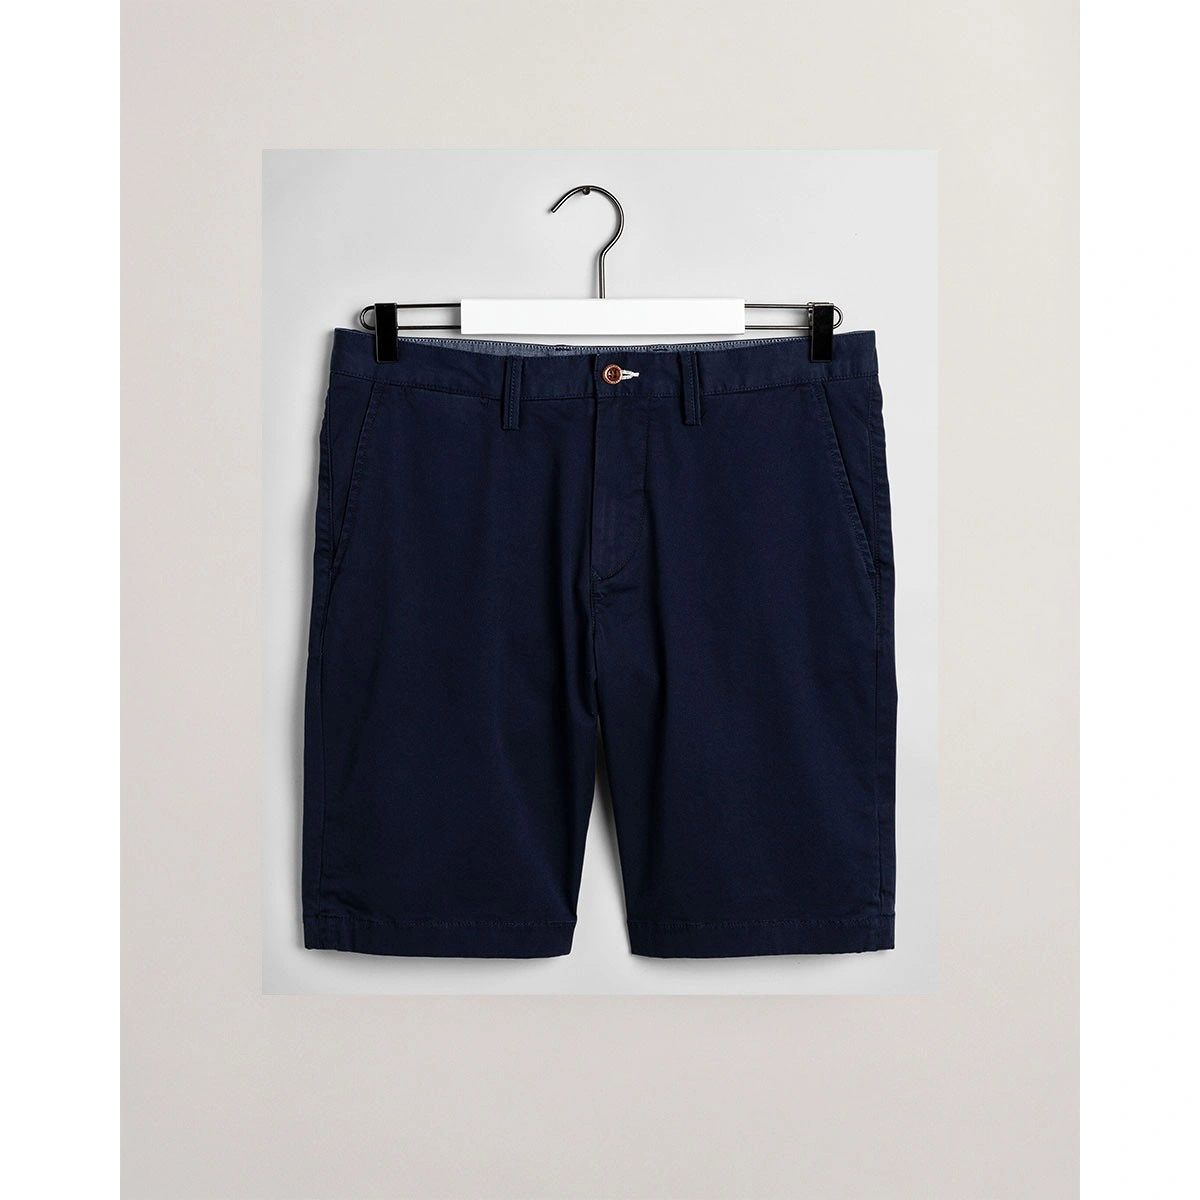 Ανδρική βερμούδα παντελόνι GANT Relaxed Fit Twill Shorts - 5@3G20007-1 -  Antoniadis Stores